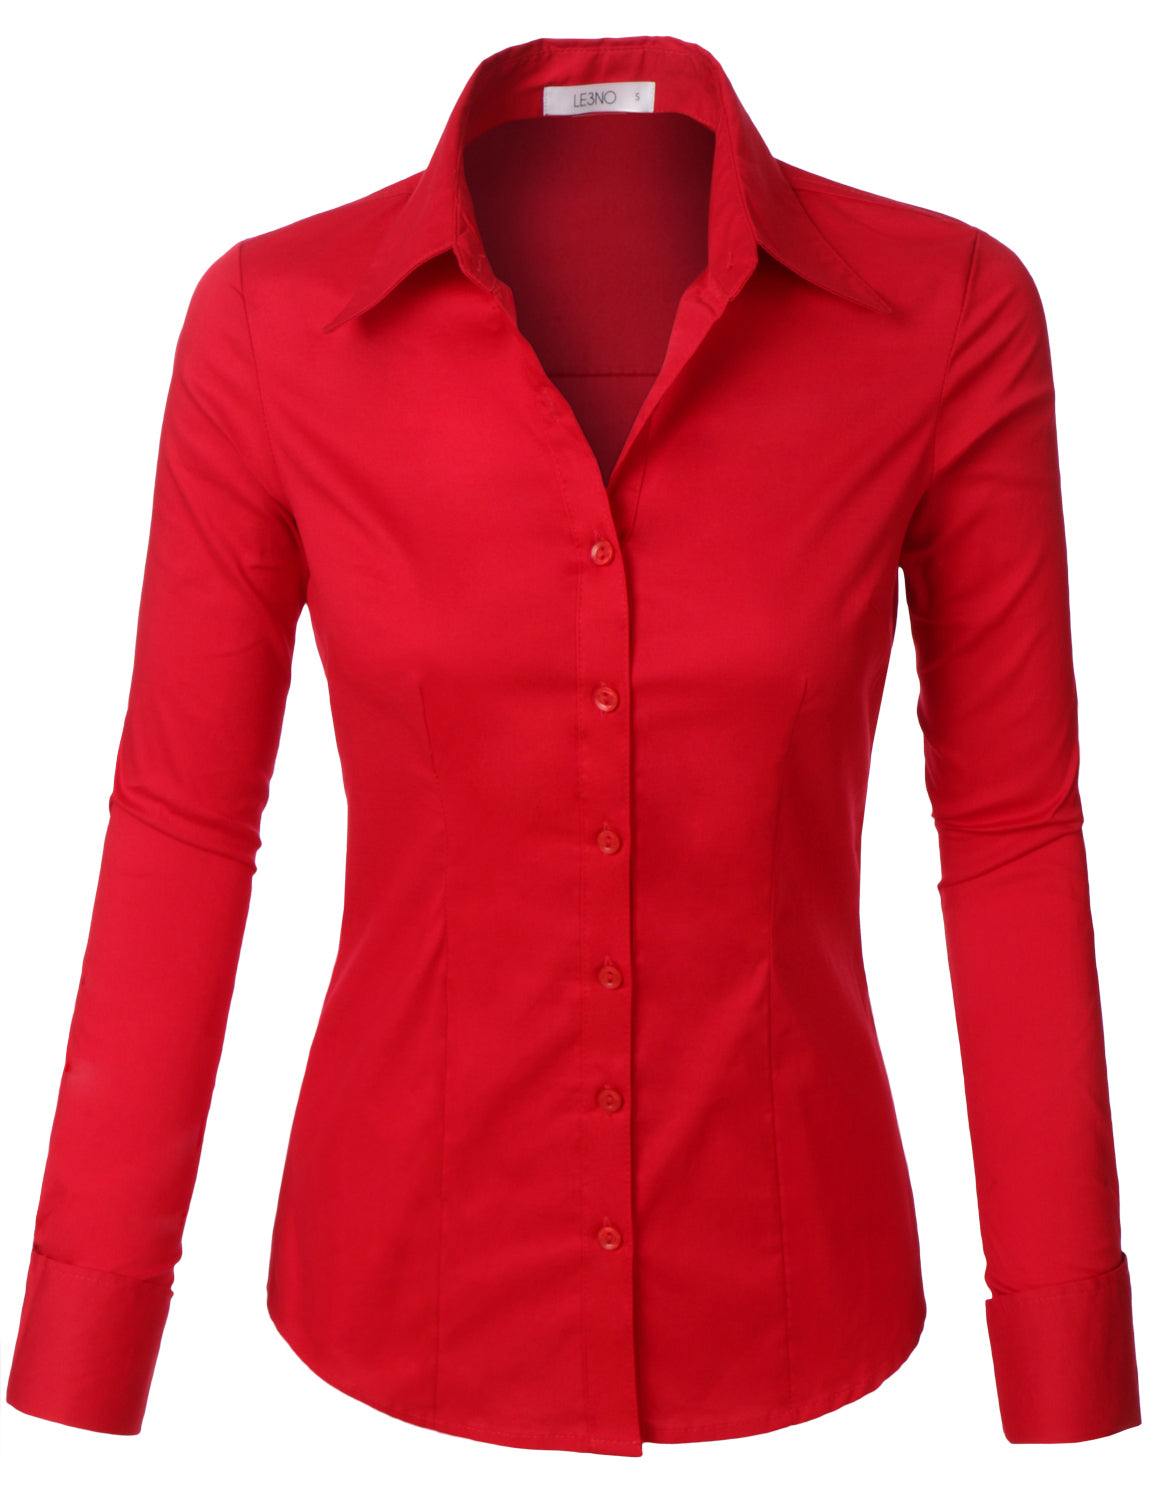 womens red dress shirt